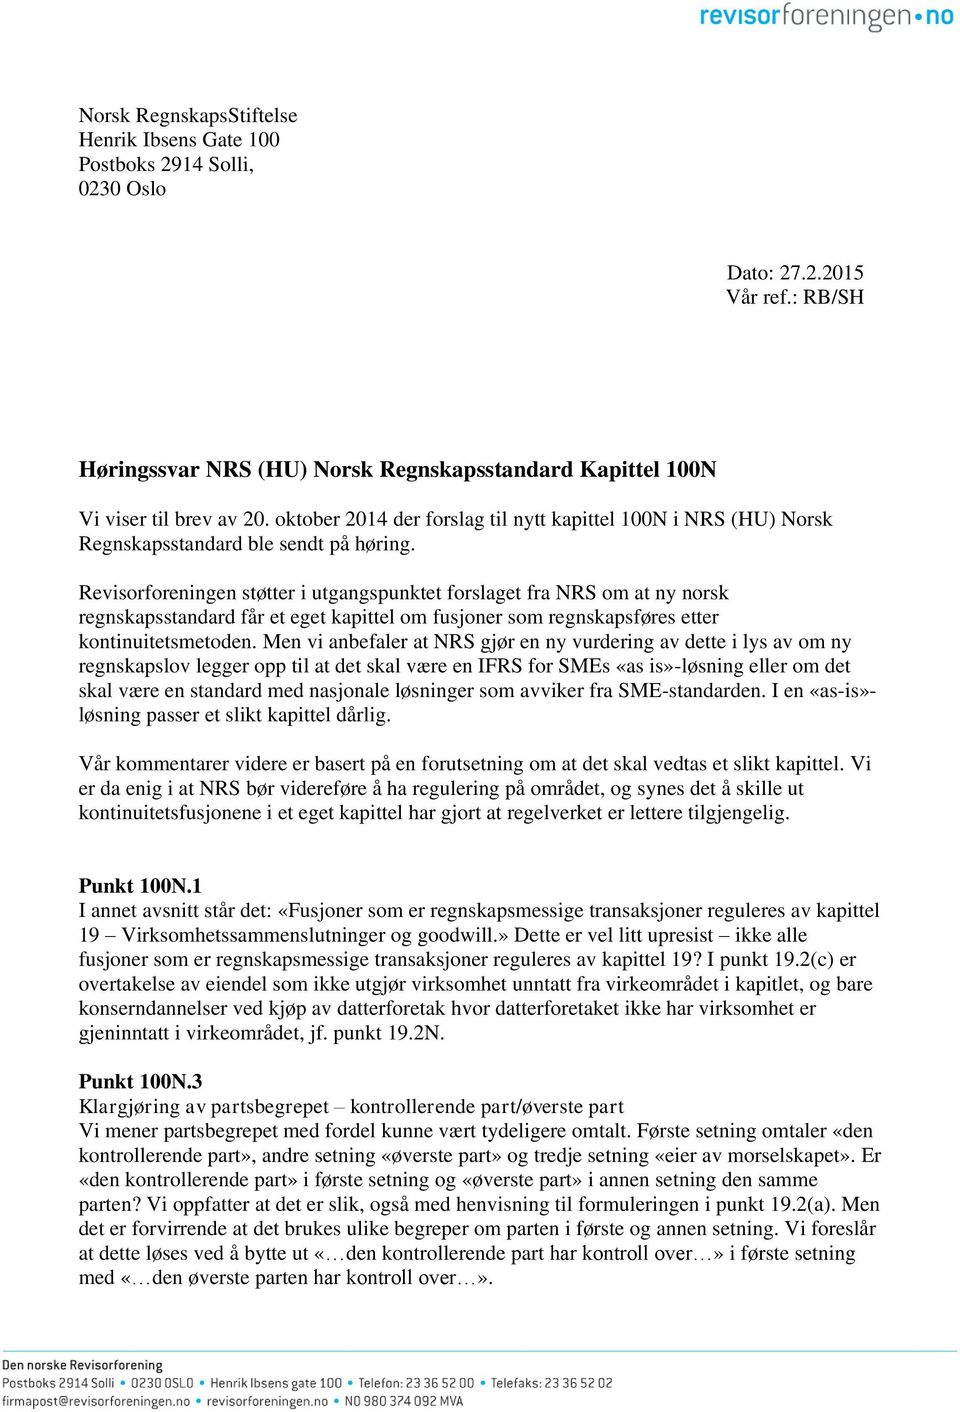 Revisorforeningen støtter i utgangspunktet forslaget fra NRS om at ny norsk regnskapsstandard får et eget kapittel om fusjoner som regnskapsføres etter kontinuitetsmetoden.